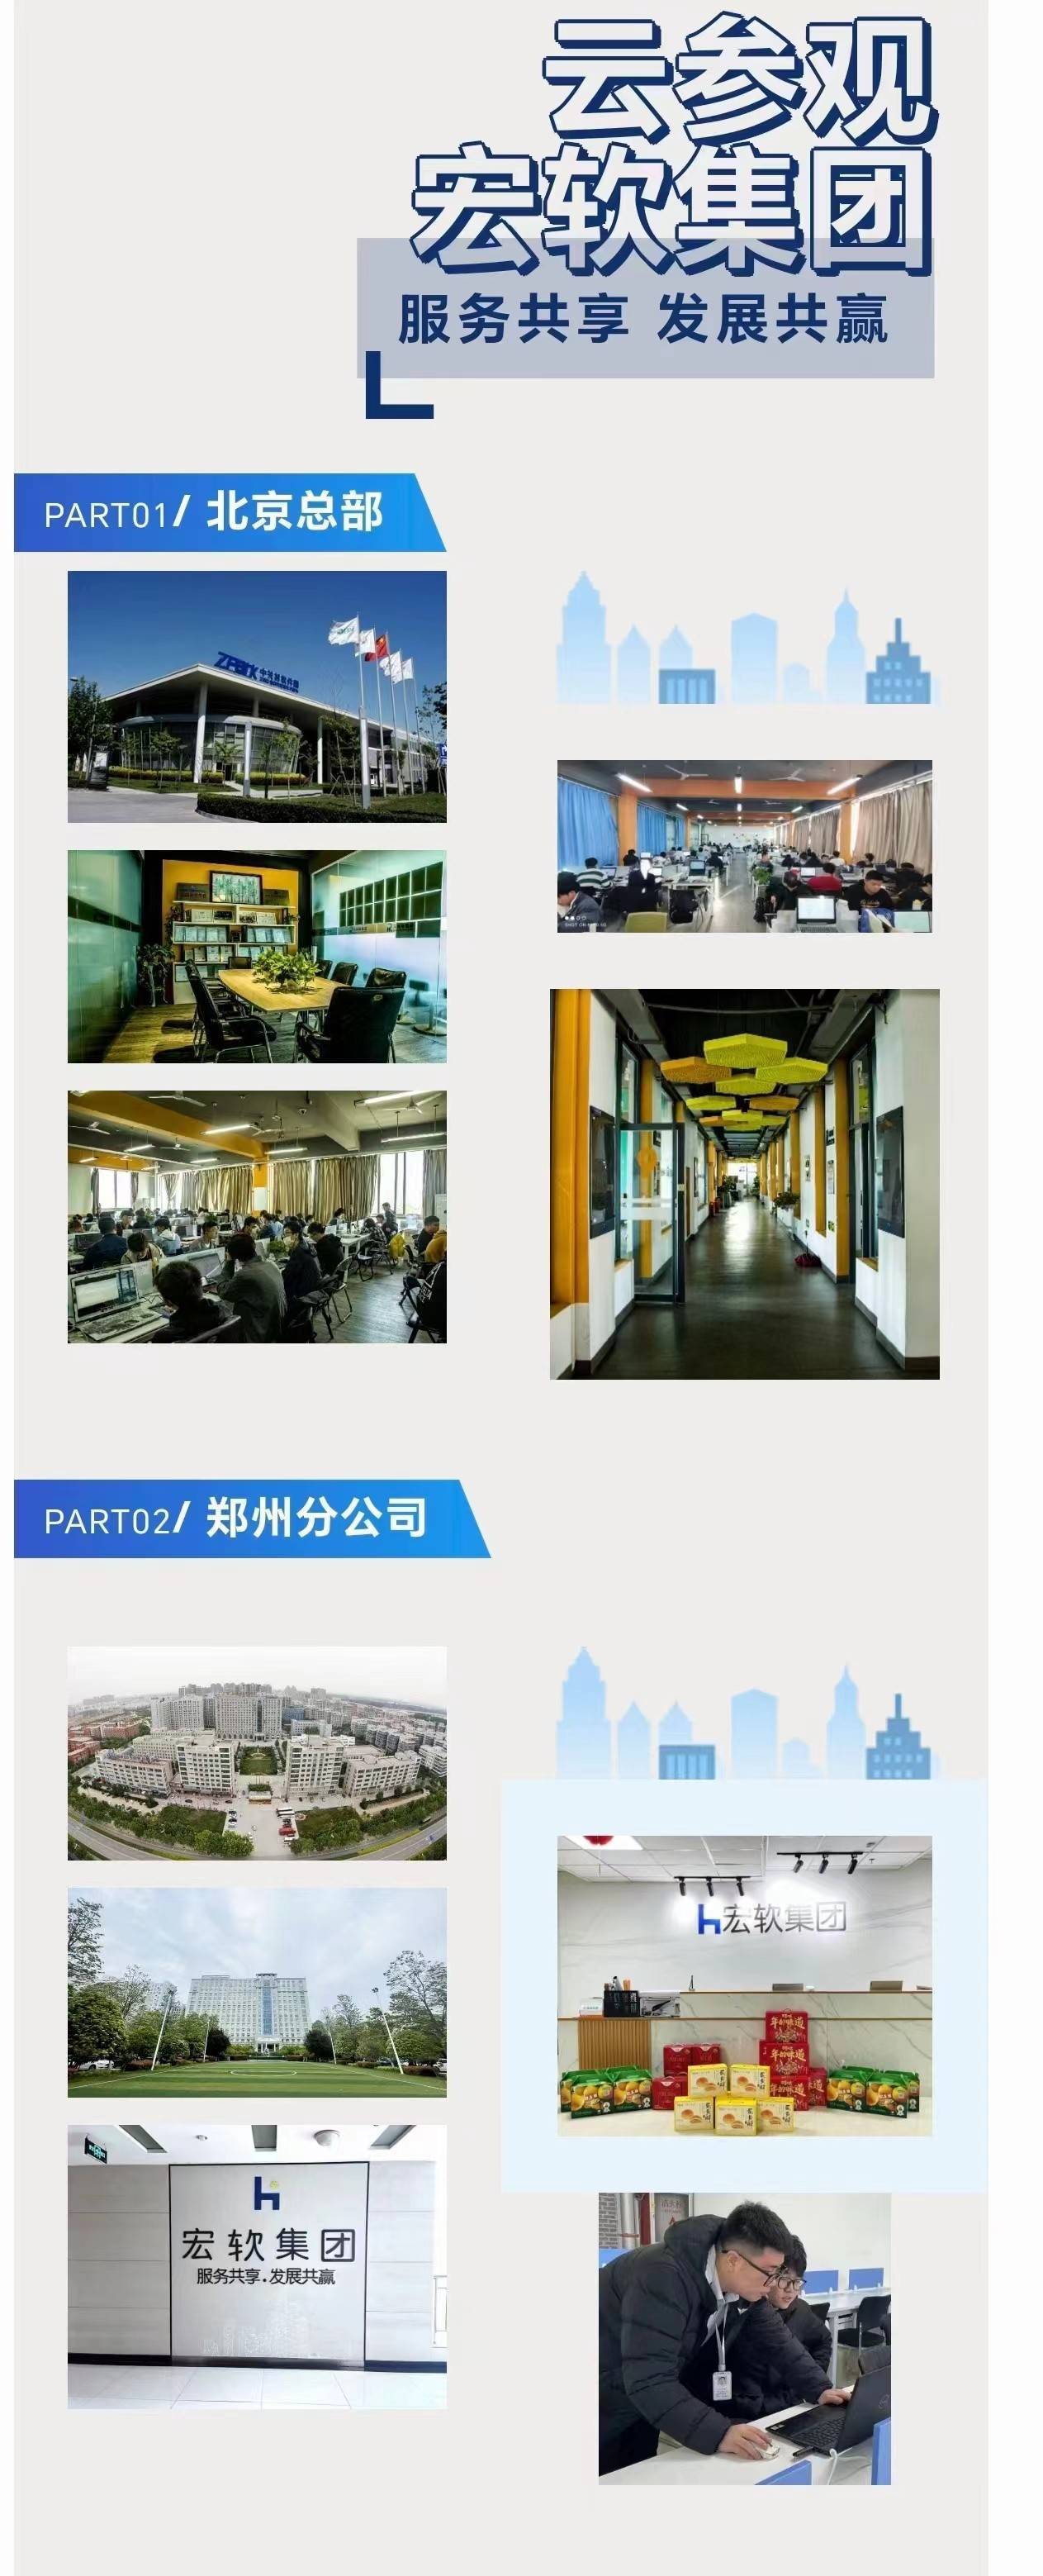  北京宏盛软科信息科技有限公司的公司展示